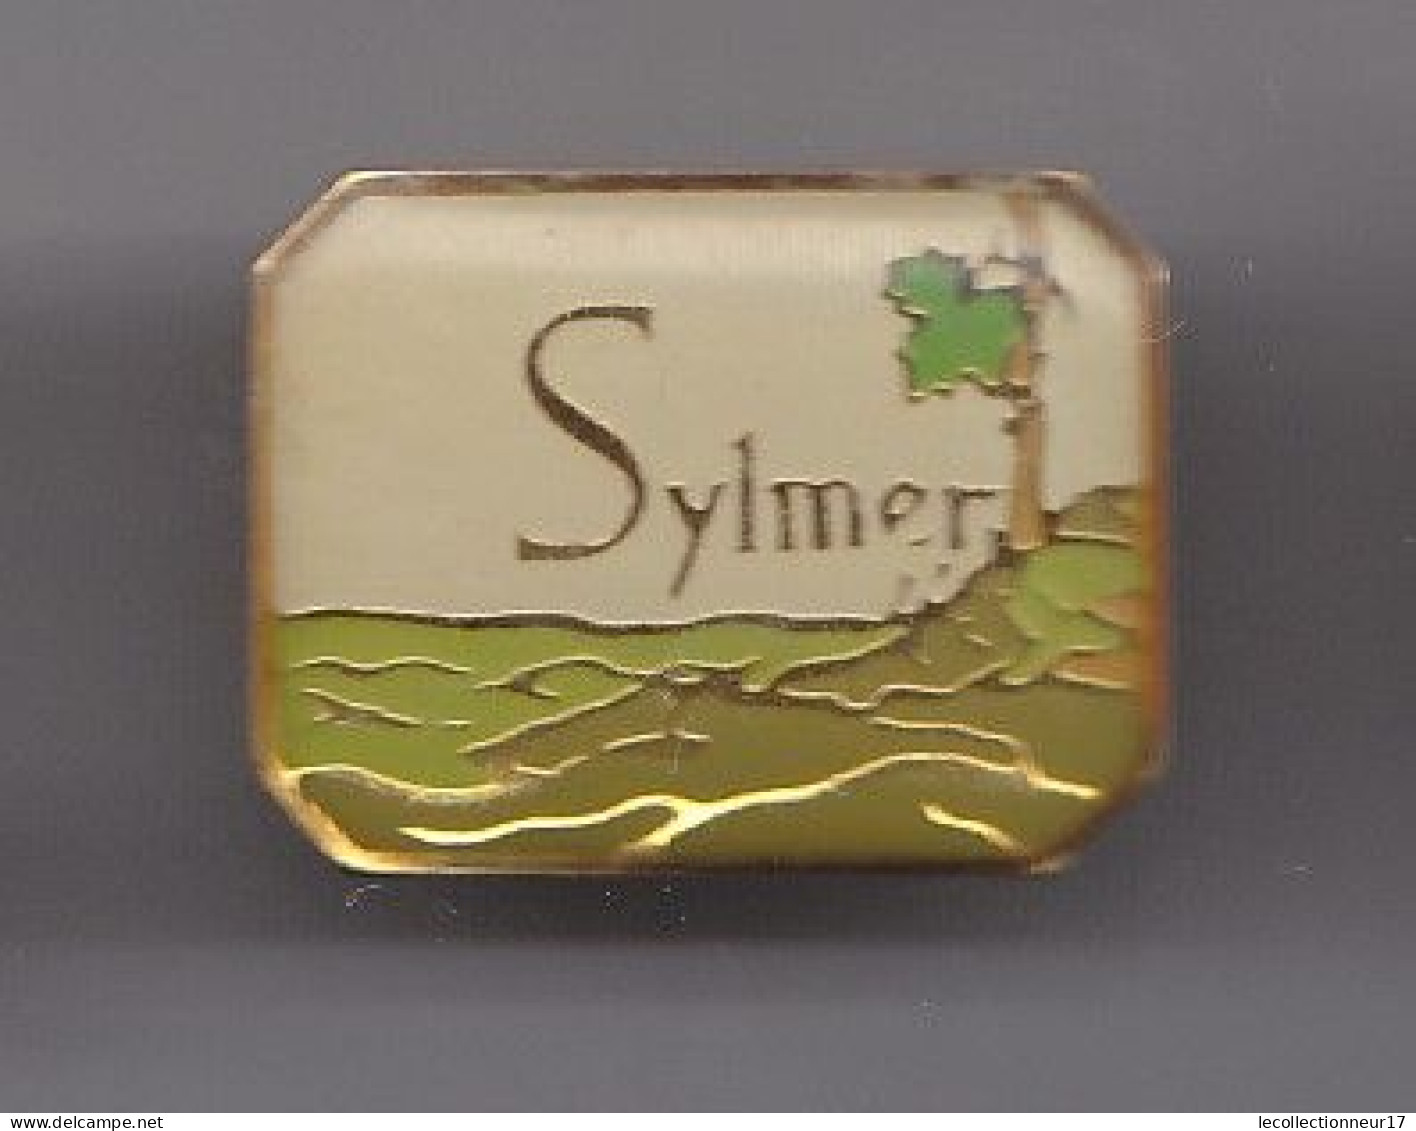 Pin's Sylmer Vin Vigne Cépage Réf 5569 - Boissons